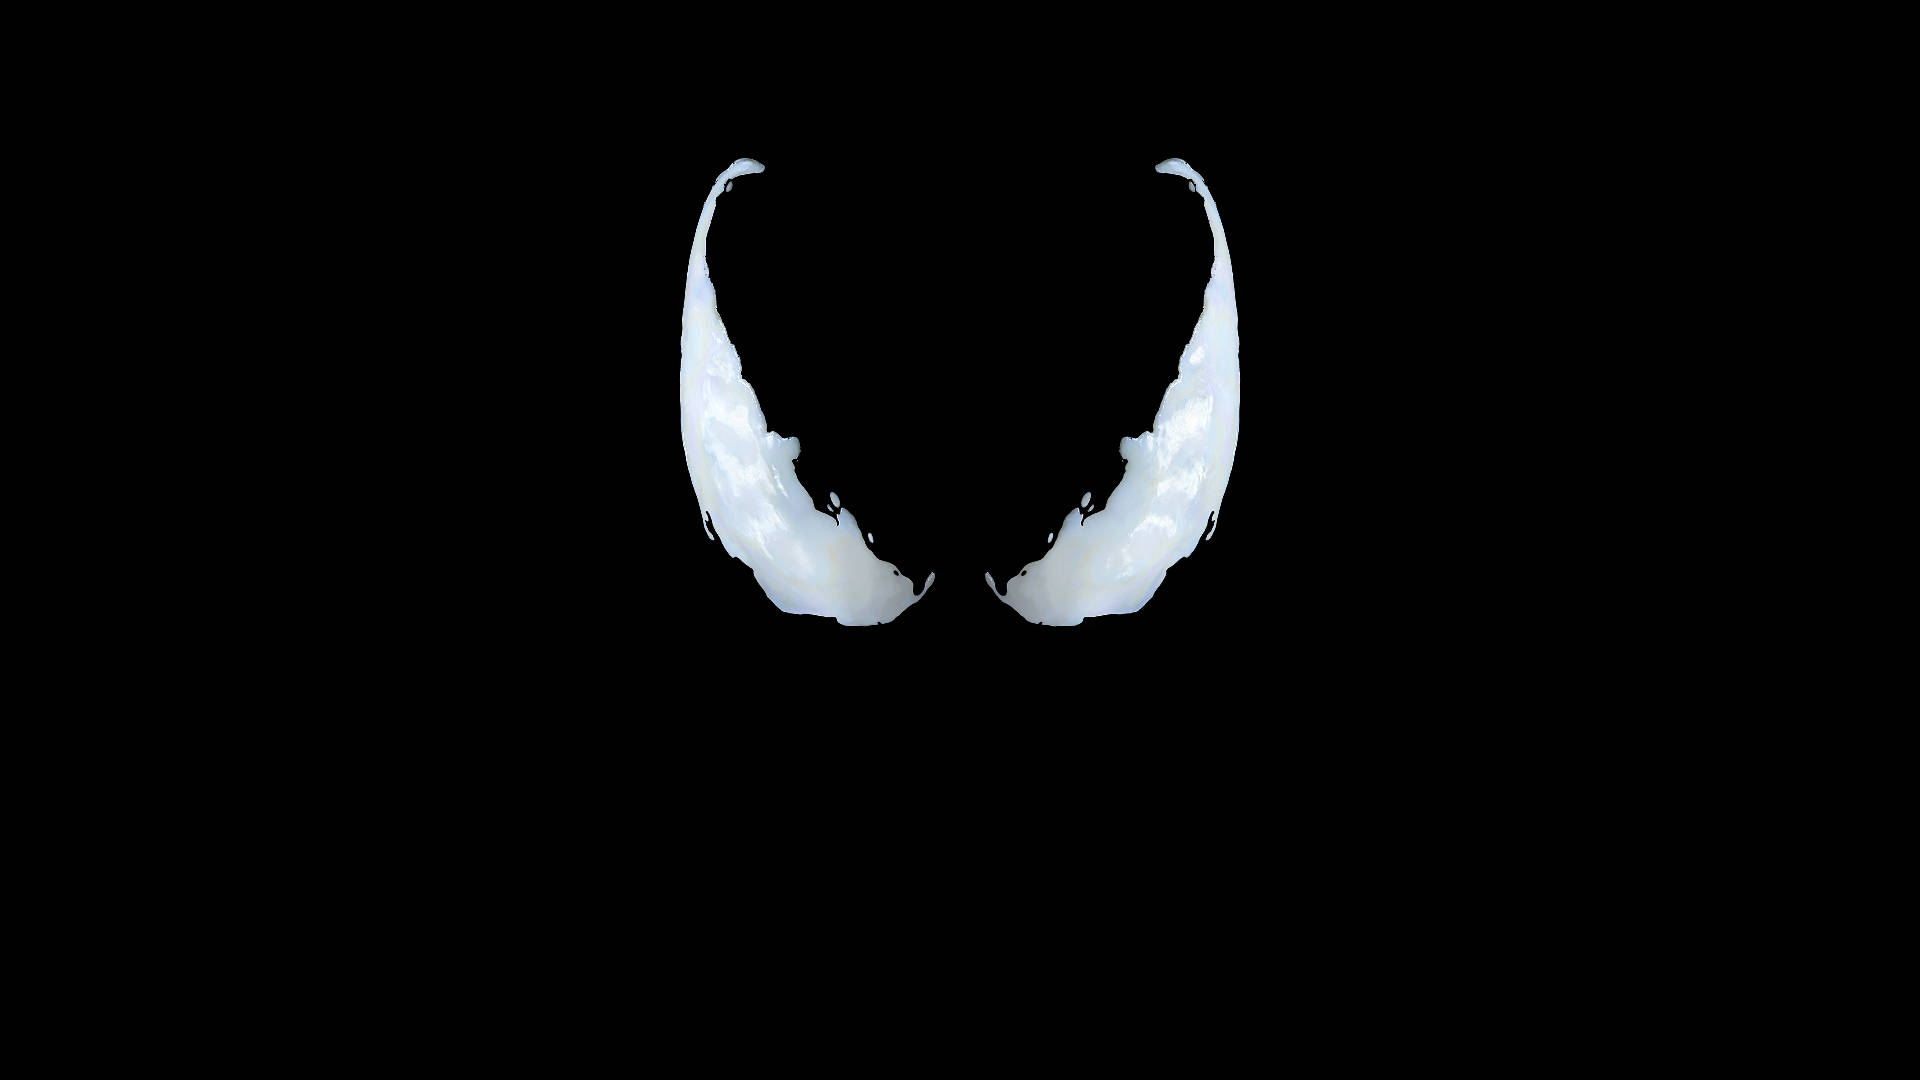 Hd Superhero Venom Horn Wallpaper